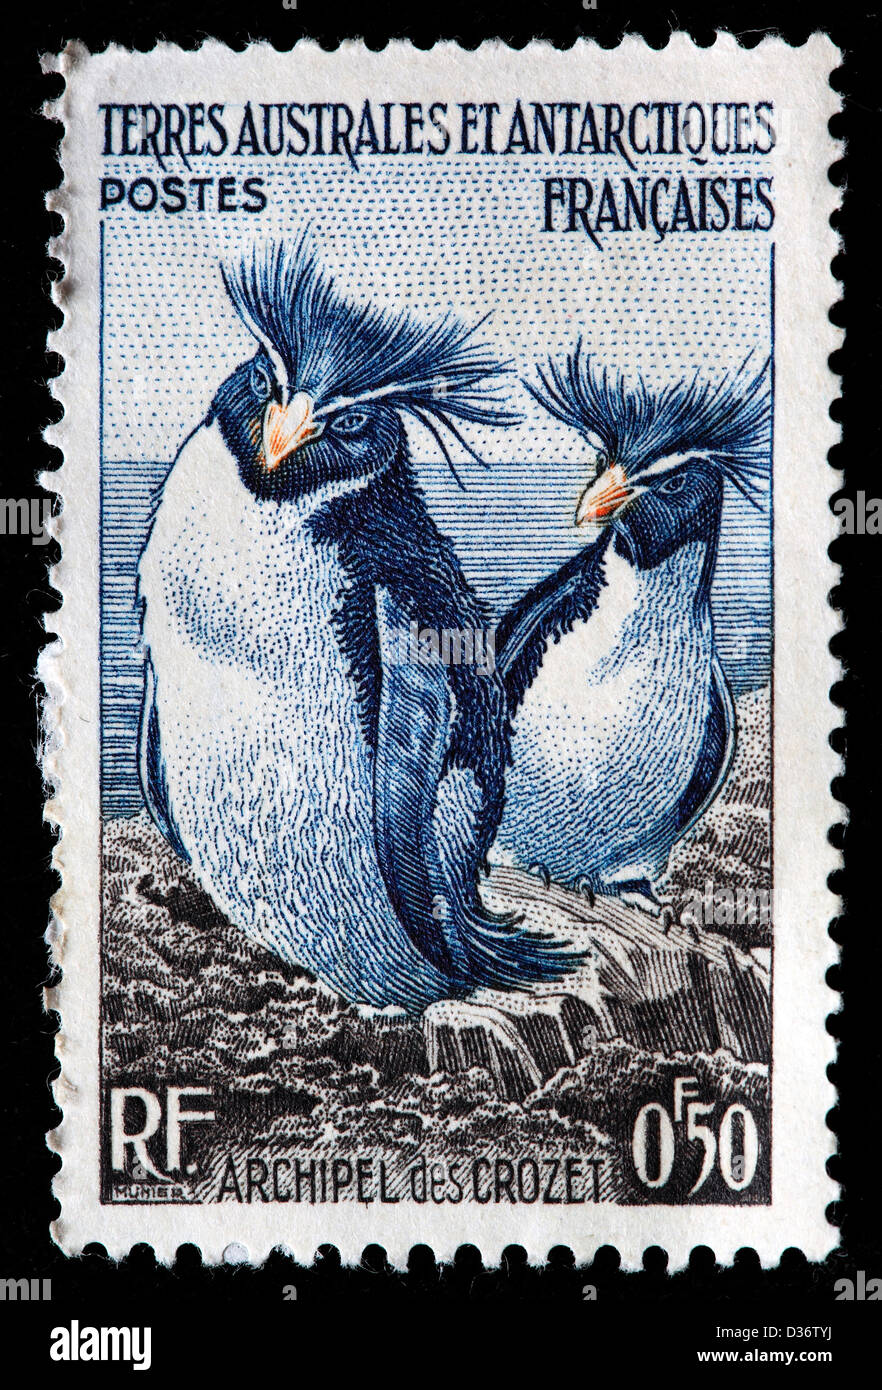 Pinguini saltaroccia, Crozet arcipelago, francobollo, Terre australi e antartiche francesi, 1956 Foto Stock